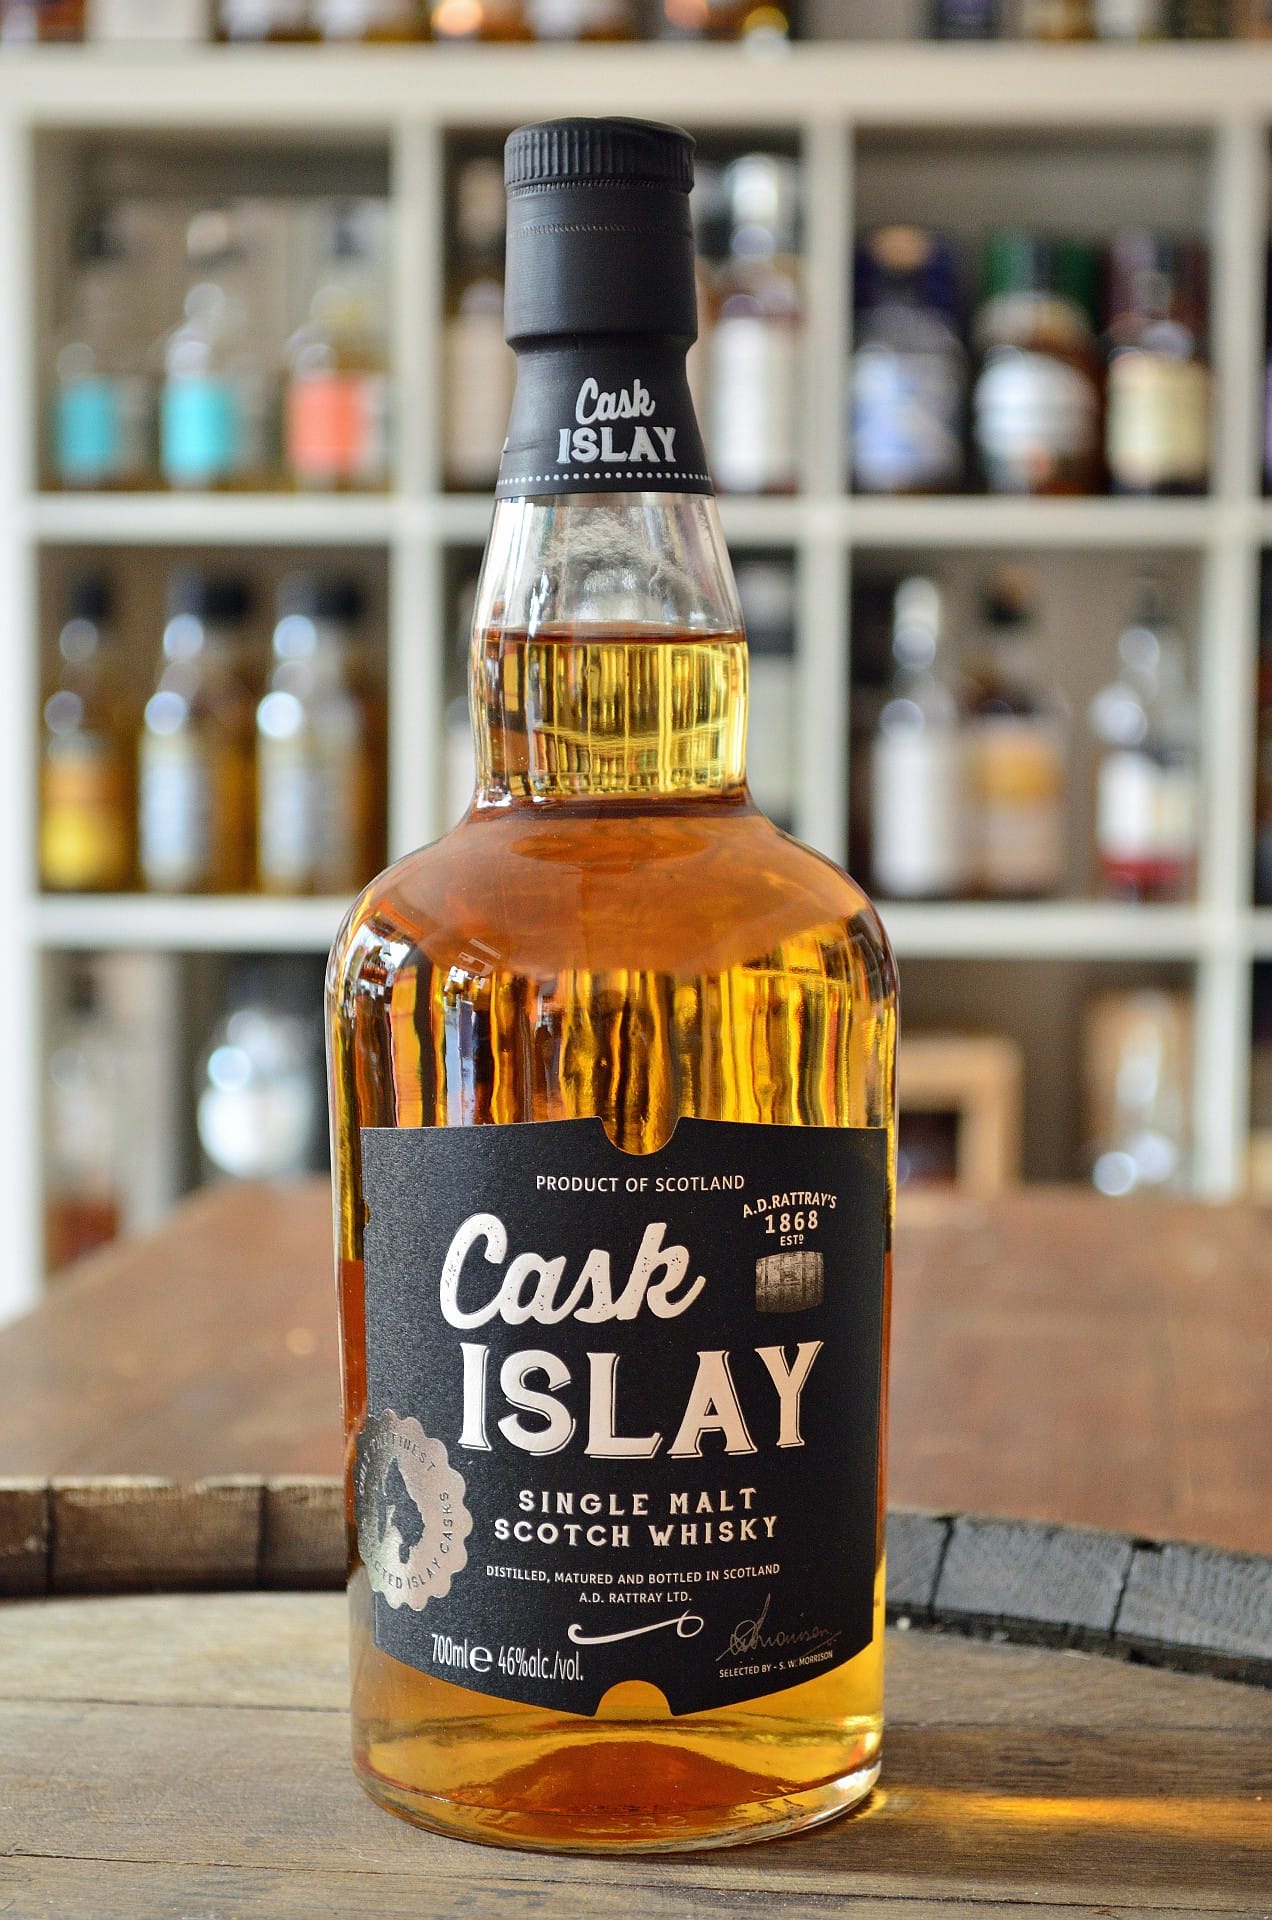 Dieser intensiv rauchige Single Malt Whisky von Rattray aus der Region Islay ist zwischen 35 und 40 Euro zu haben. Dafür verzichtet er auf eine genaue Herkunftsangabe des Fasses. "No Age Statement"-Whiskys wie dieser bieten oft ein tolles Preis-Genuss-Verhältnis.